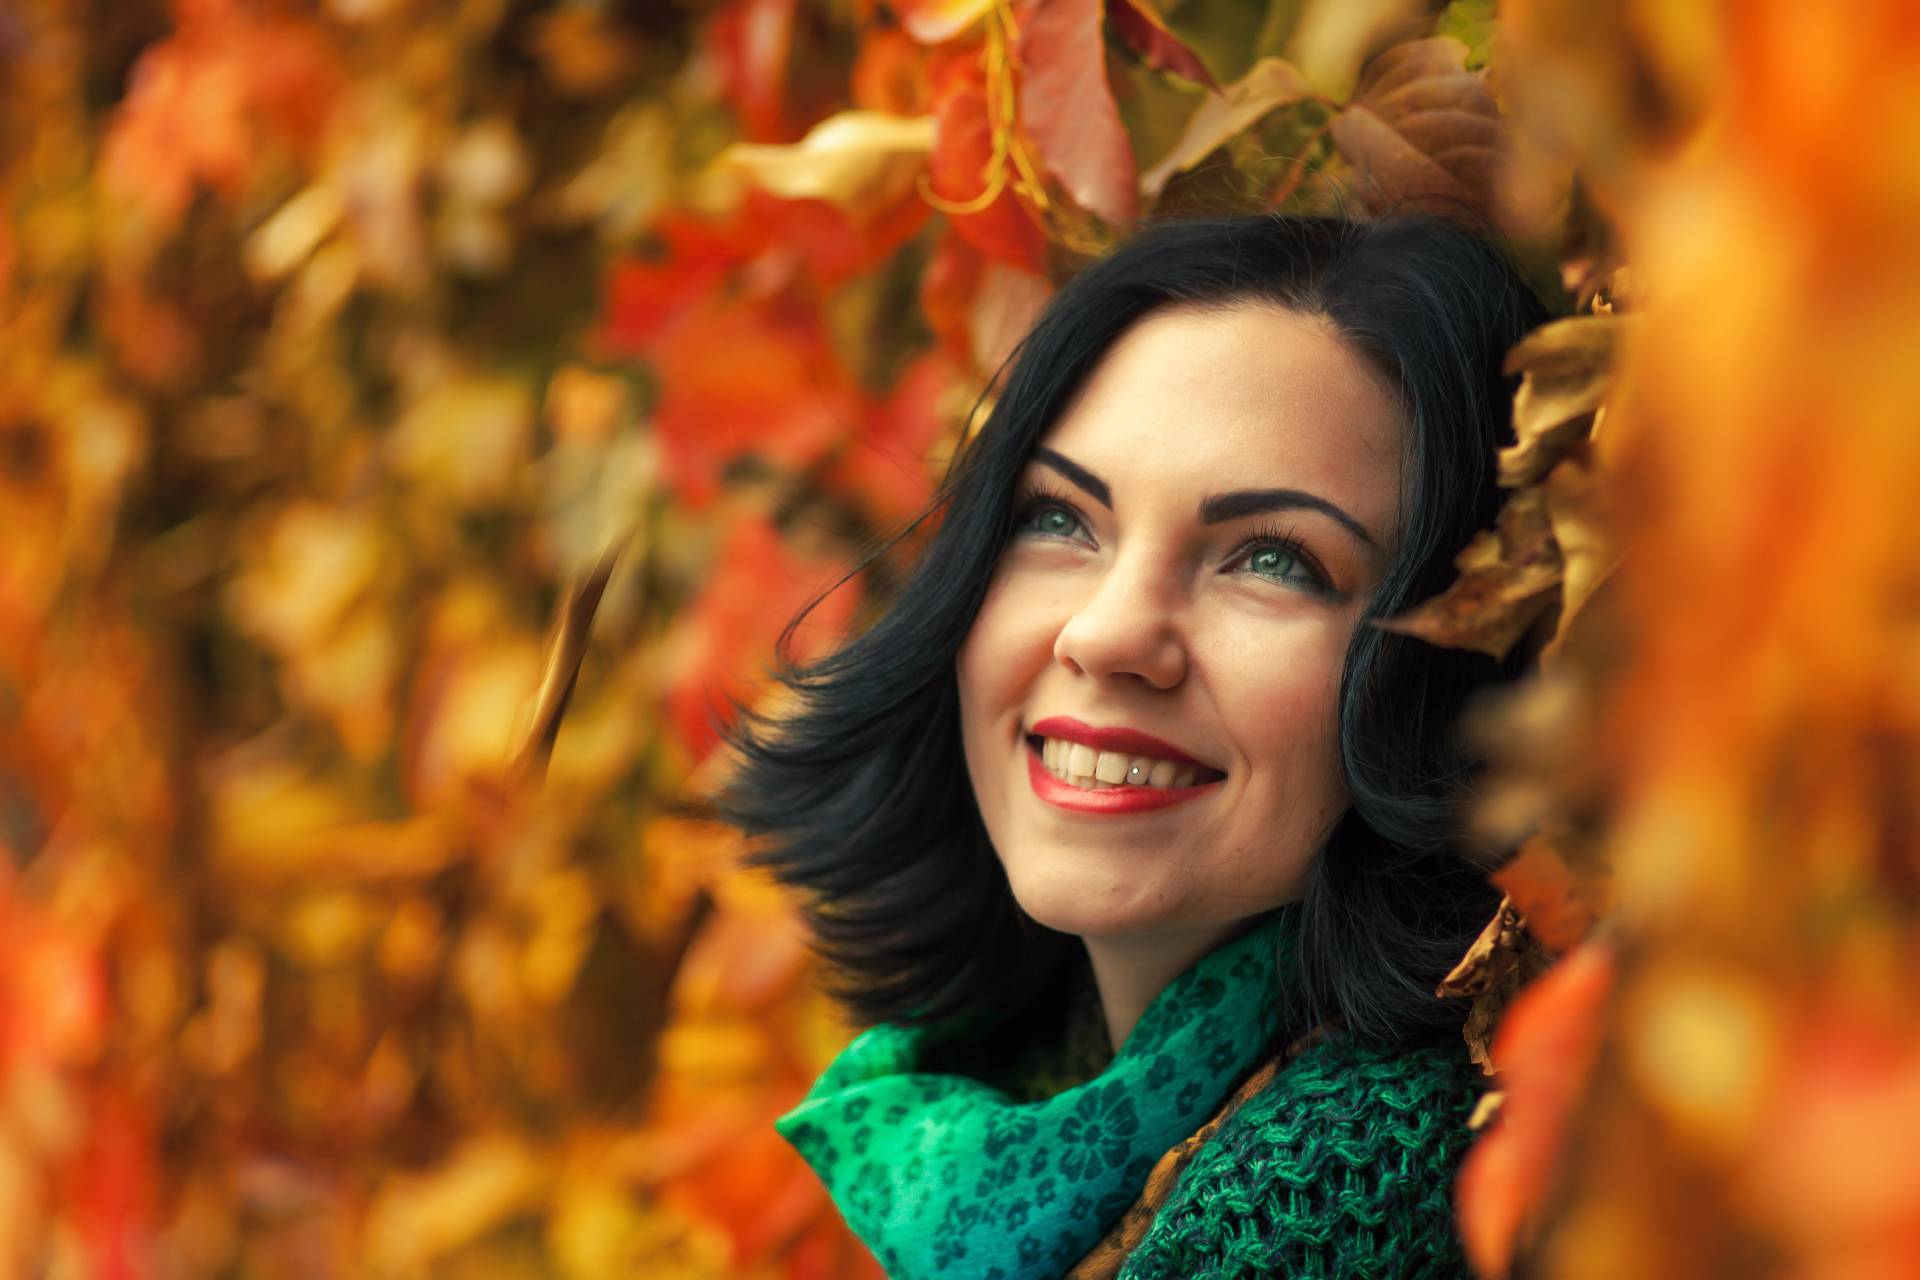 Kobieta w jesiennym makijażu leżąca w kolorowych liściach 